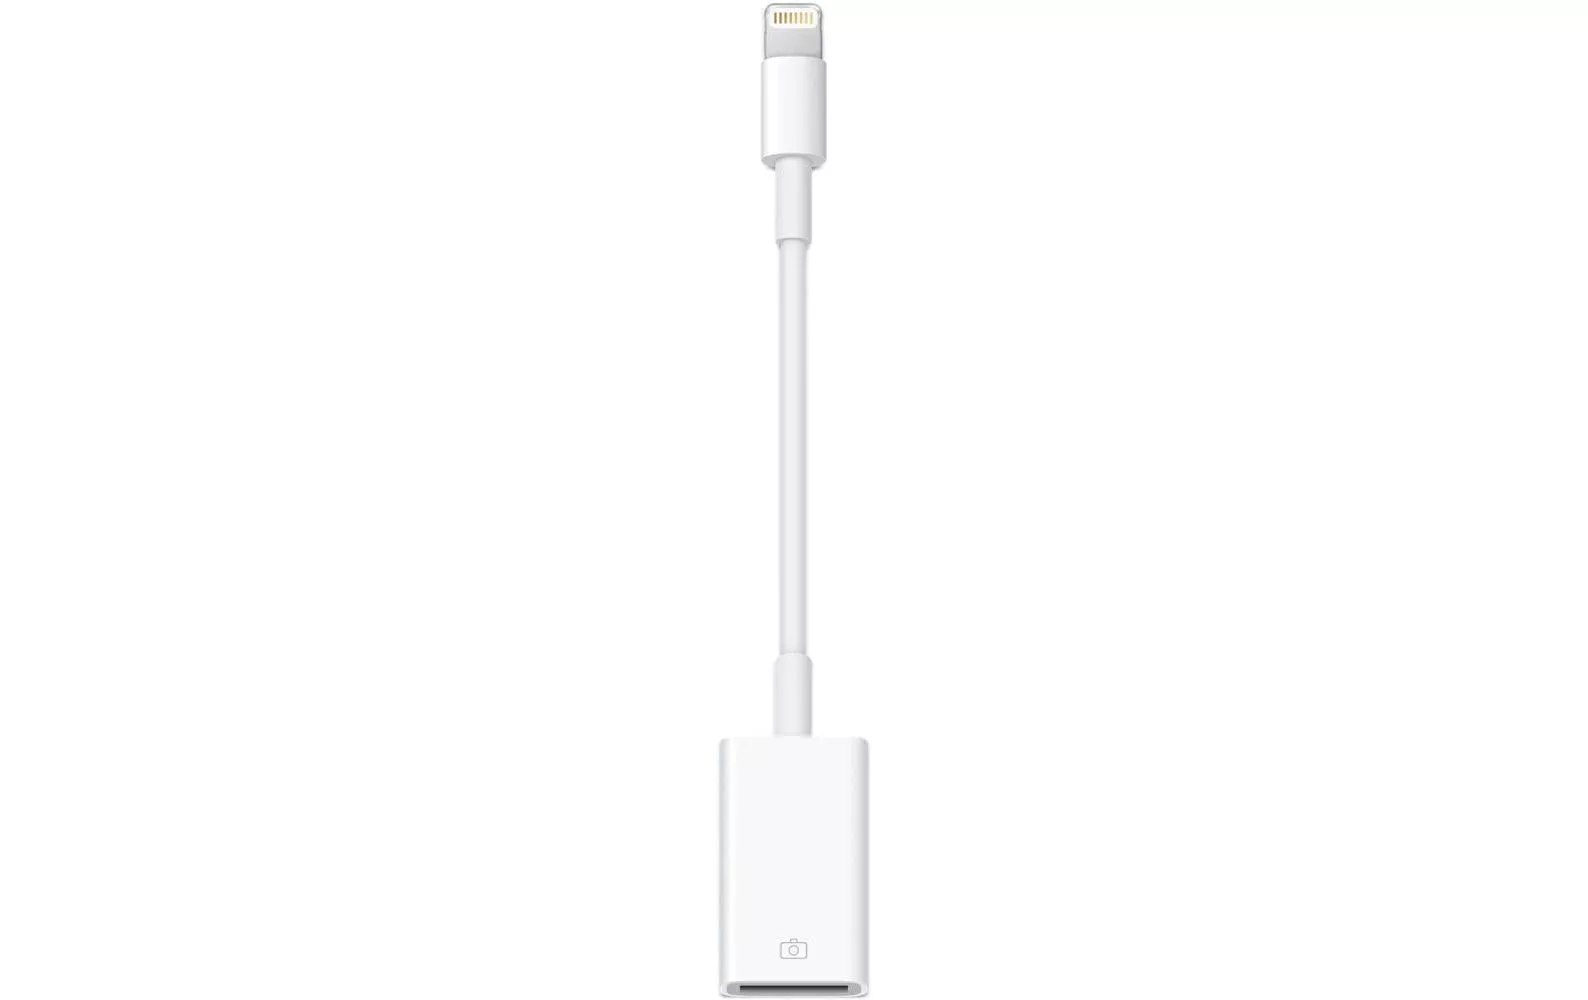 Apple Lightning to USB Camera Adapter. Apple Lightning to USB 3 Camera Adapter. Адаптер Apple Lightning-USB 3 Camera белый (mk0w2zm/a).